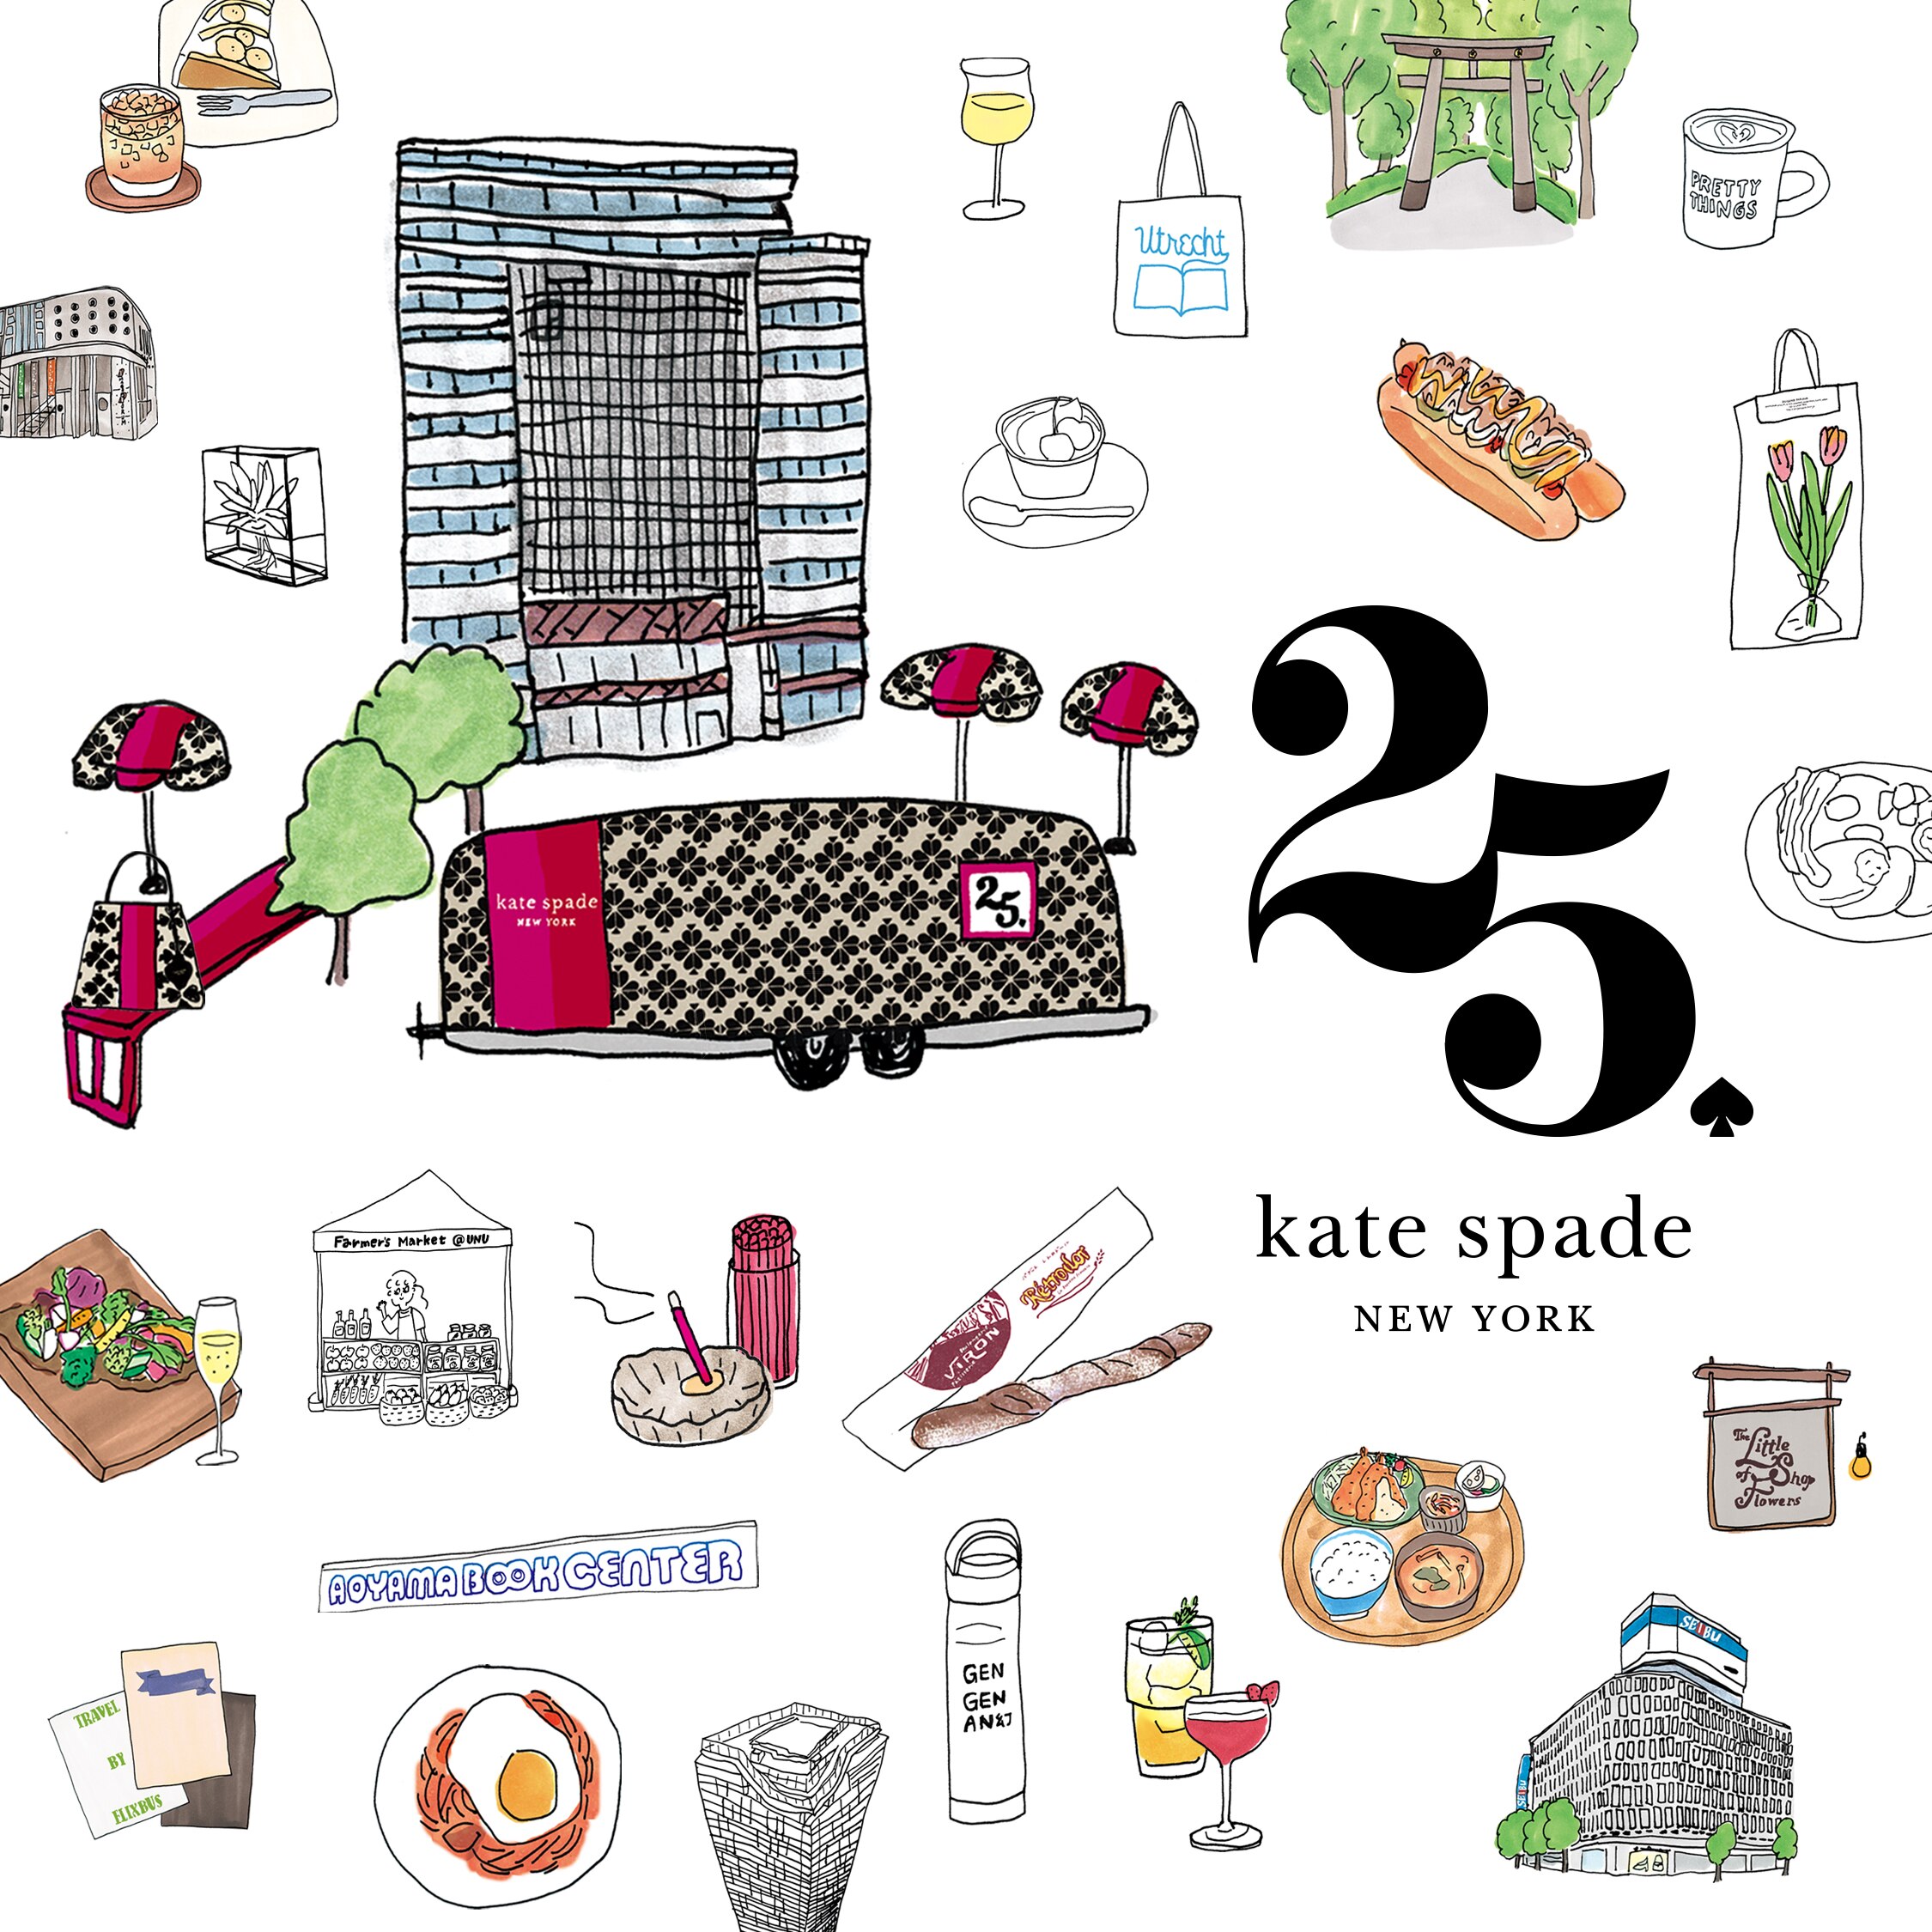 ケイト・スペード ニューヨークは、日本上陸25 周年を記念し、期間限定インスタレーション「スペード フラワー スクエア」を渋谷キャストで開催 |  公式ブランドブログ「our news」 |【公式】kate spade new york（ケイト・スペード ニューヨーク）